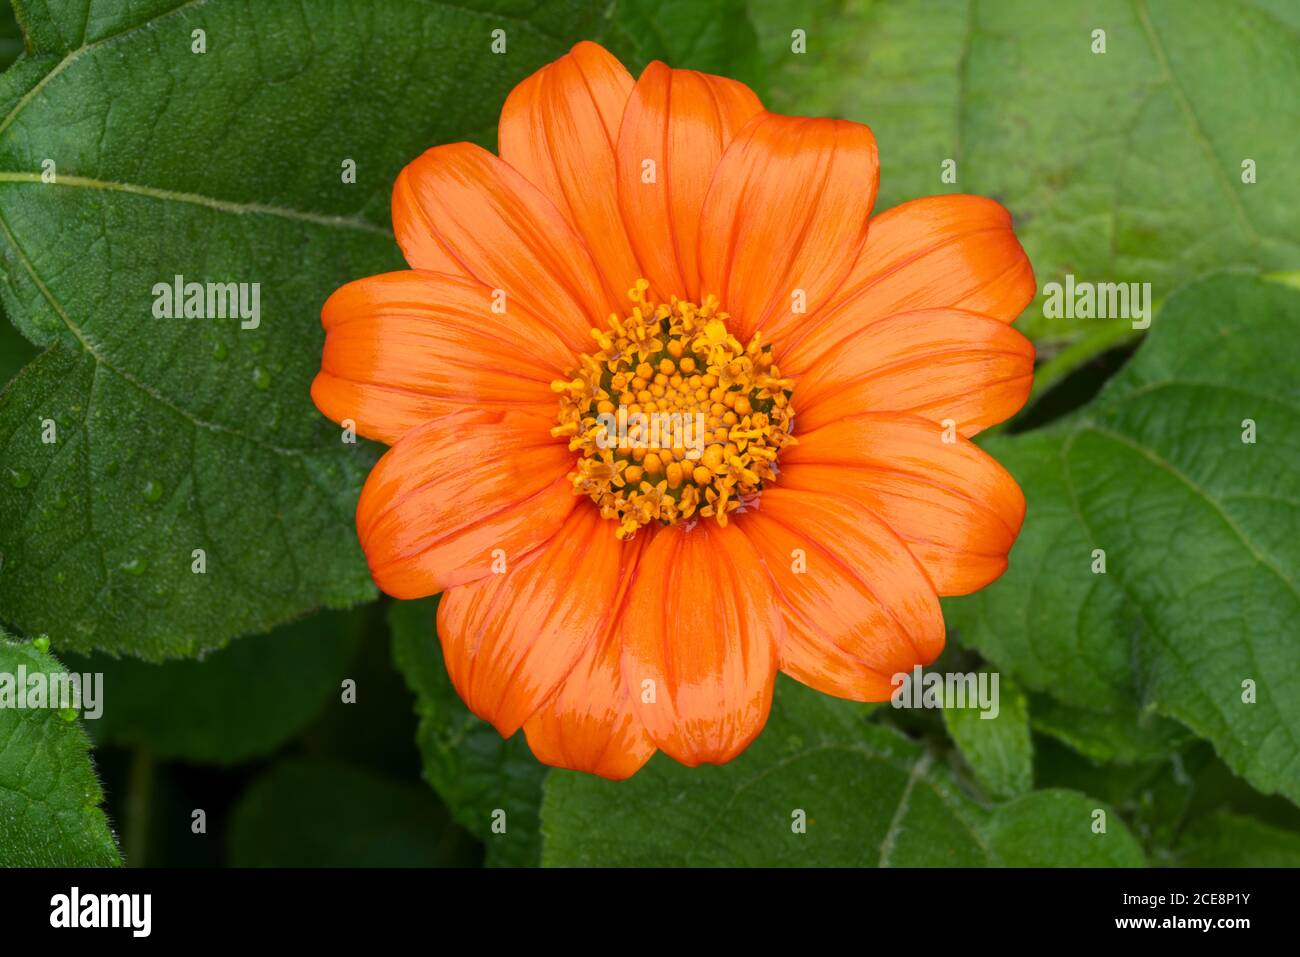 Nahaufnahme der einzelnen Blume von leuchtend orange mexikanische Sonnenblume, Tithonia rotundifolia ‘Goldfinger’, nass mit Regen. Große dunkelgrüne Blätter hinten. Stockfoto